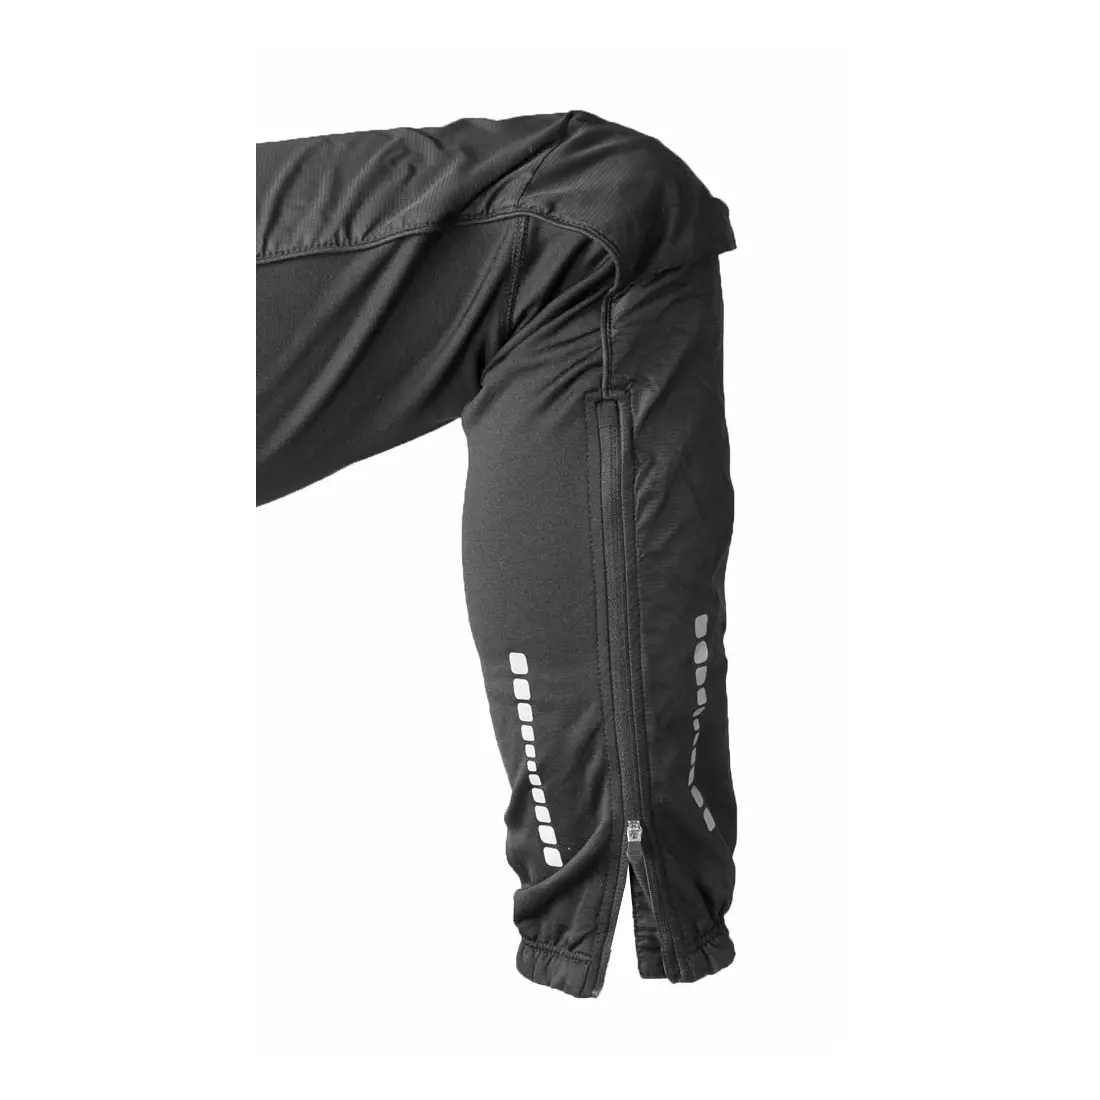 NEWLINE BASE CROSS PANTS - pantaloni izolați pentru alergare pentru femei 13105-060